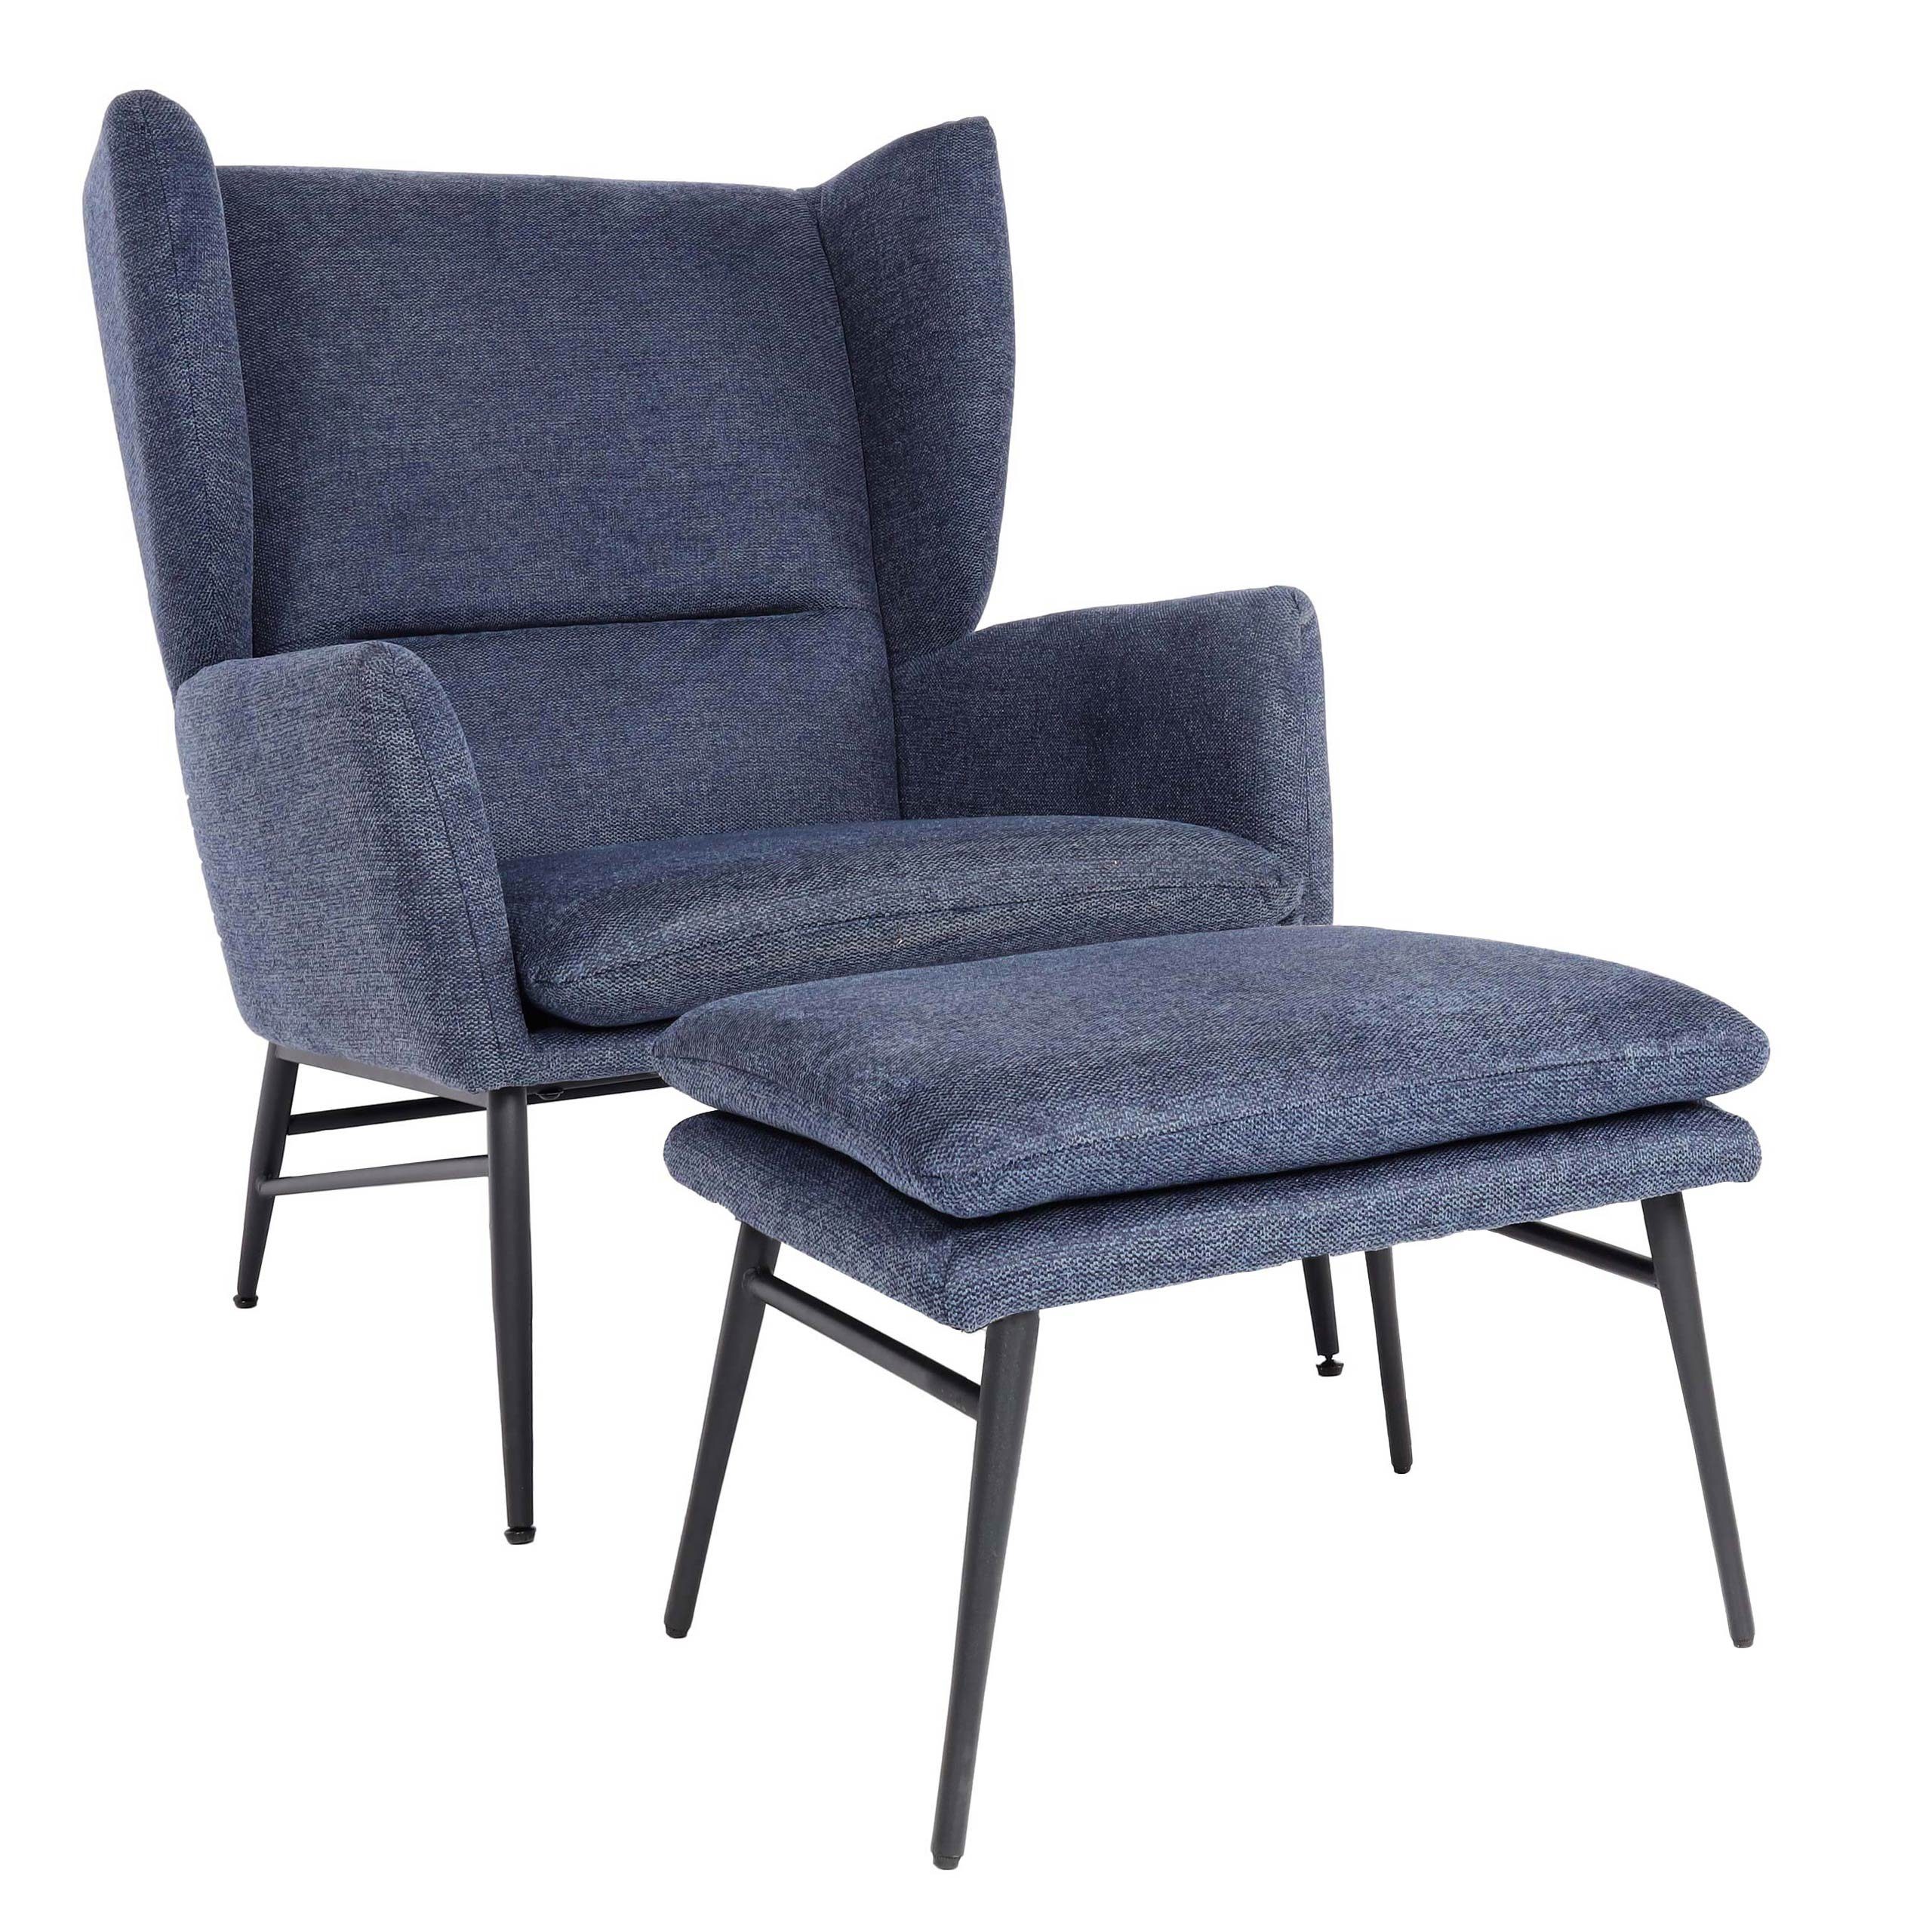 MCW Loungesessel Extra breite blau Sitzkissen abnehmbar MCW-L62-mO, Sitzfläche